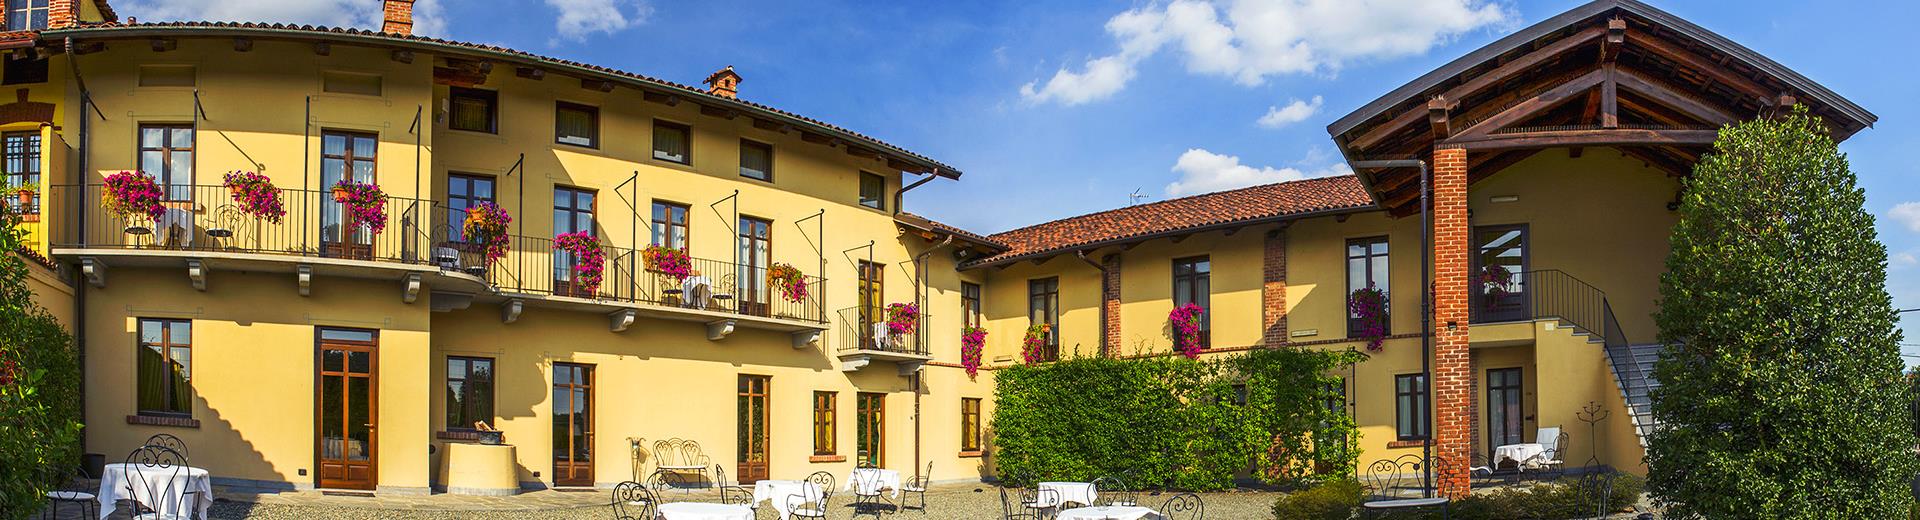 Il Best Western Plus Hotel Le Rondini ti offre la soluzione ideale per il tuo soggiorno. A pochi minuti dall aeroporto di Caselle e a breve distanza dal centro di Torino e dall’Allianz Juventus Stadium